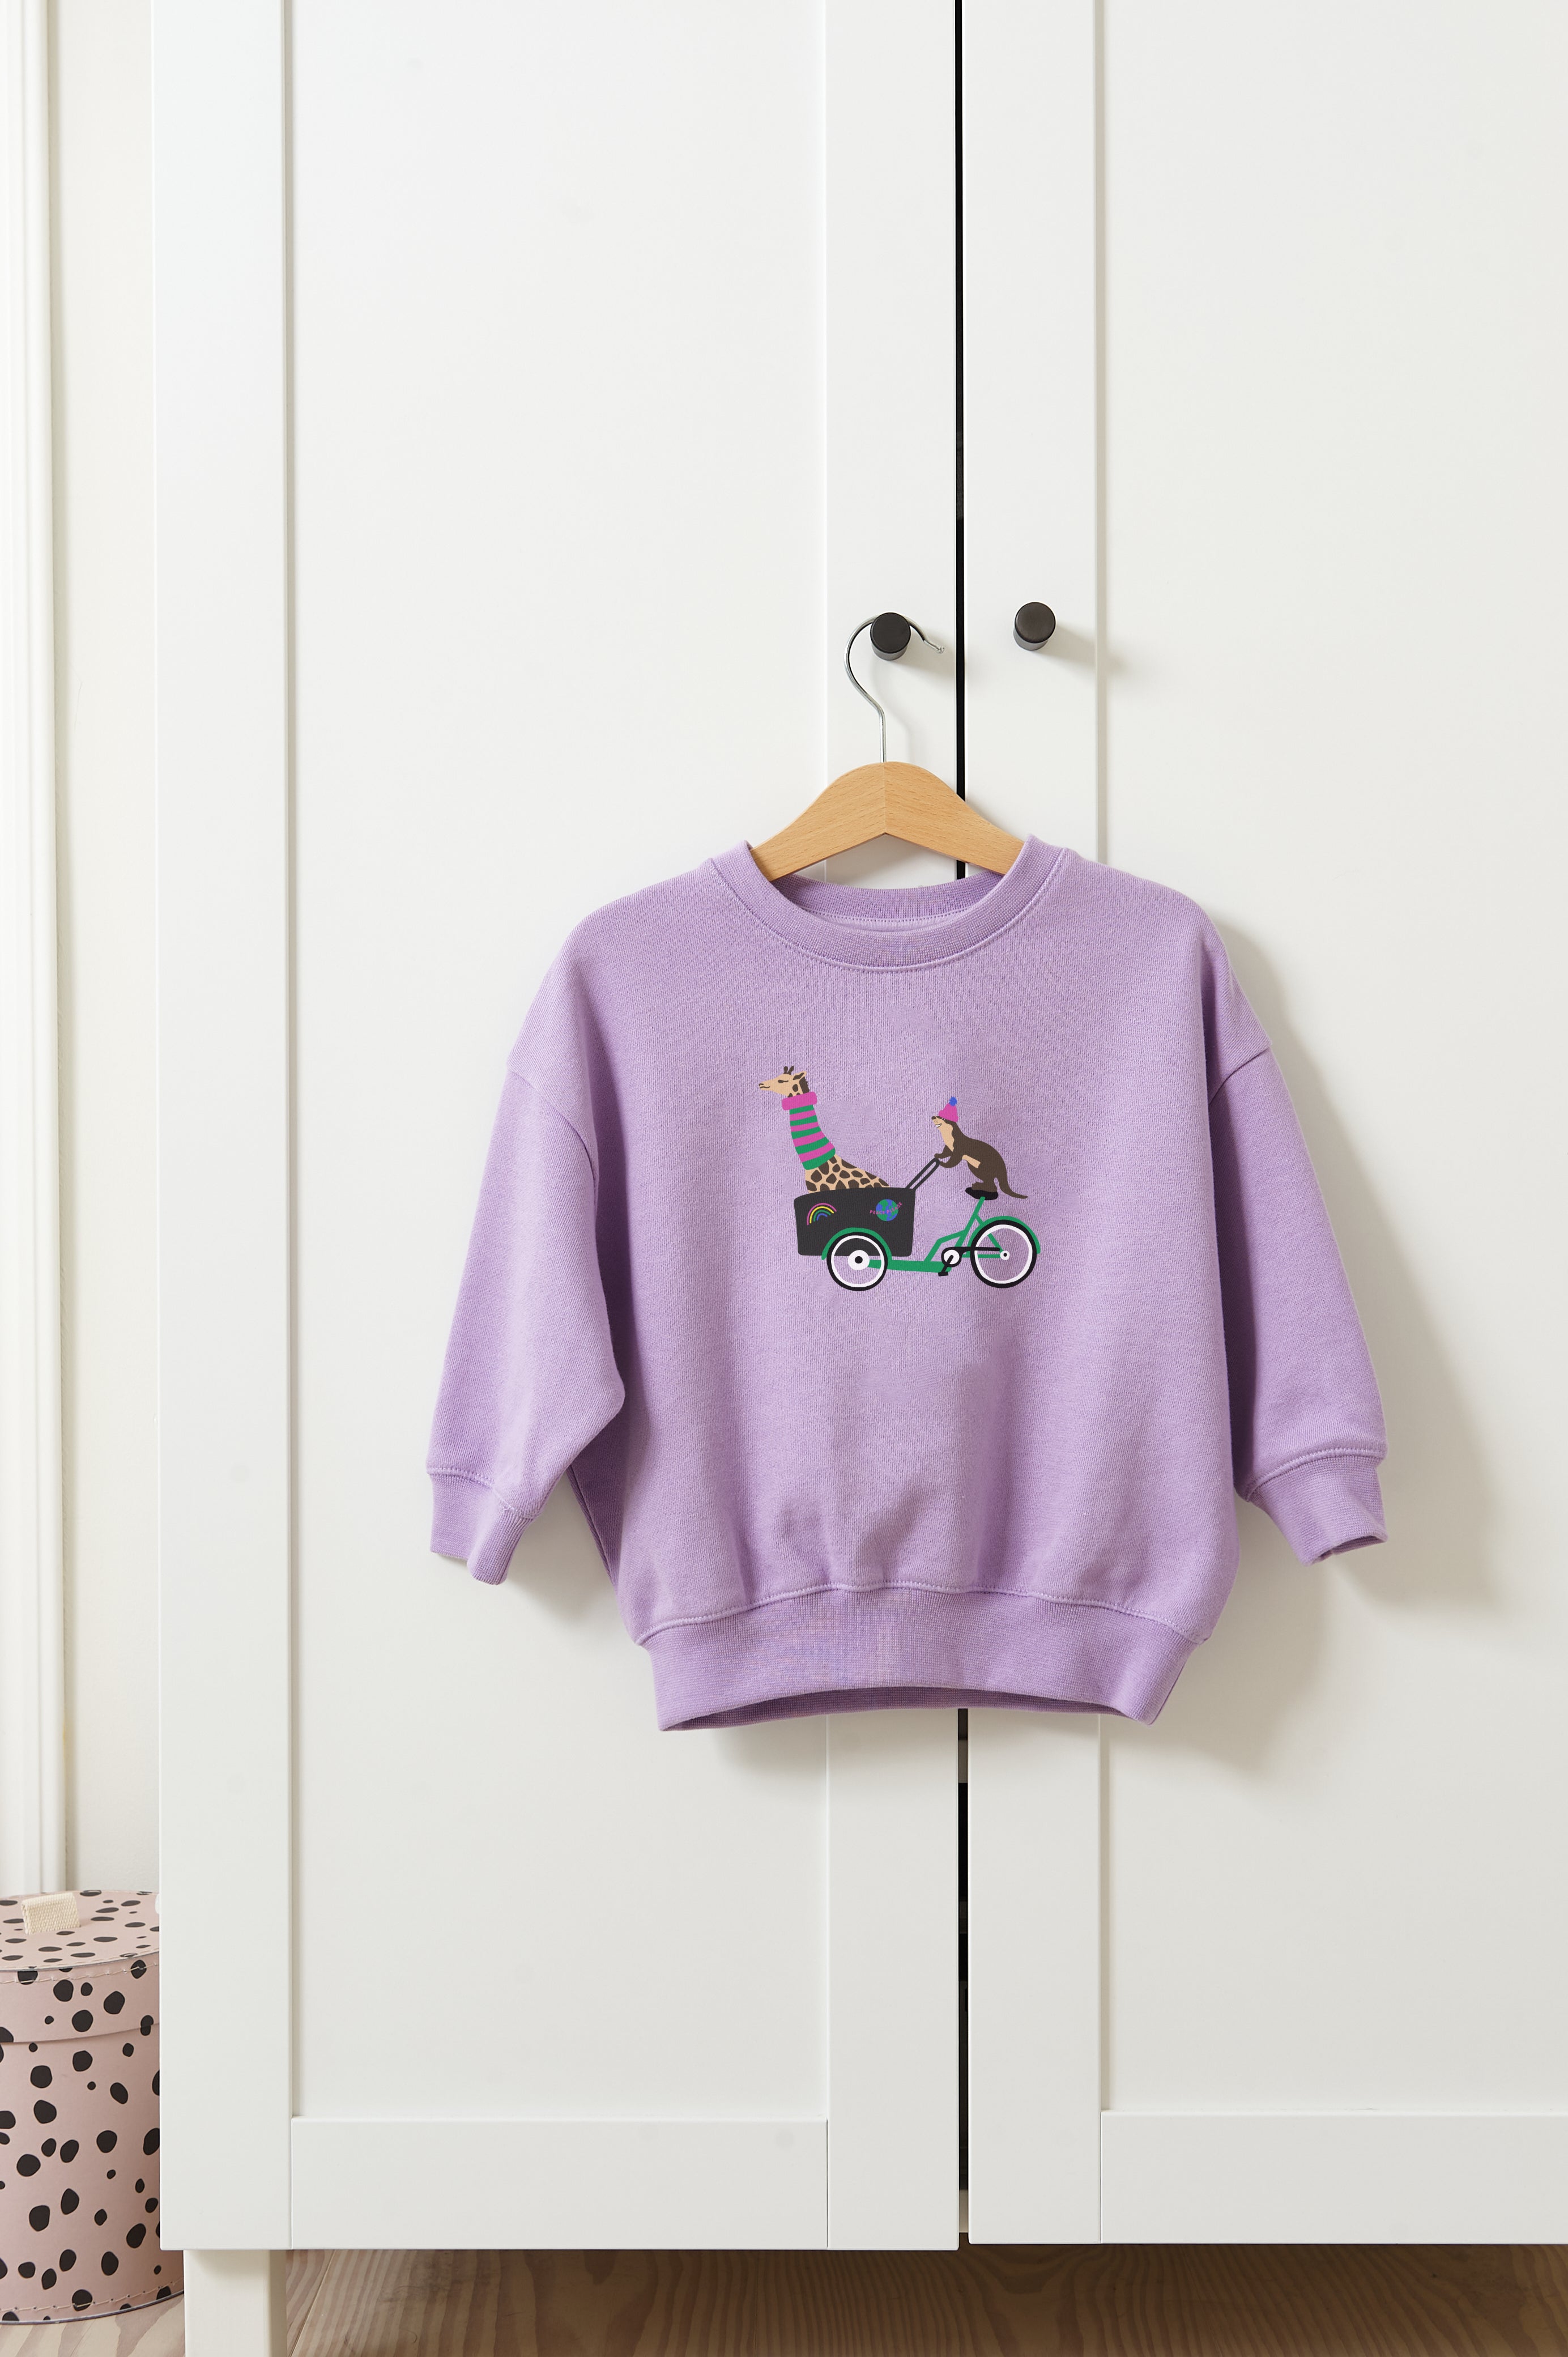 Kinder Lukkily – LASTENRADLIEBE LUKKILY Sweatshirt lavender,